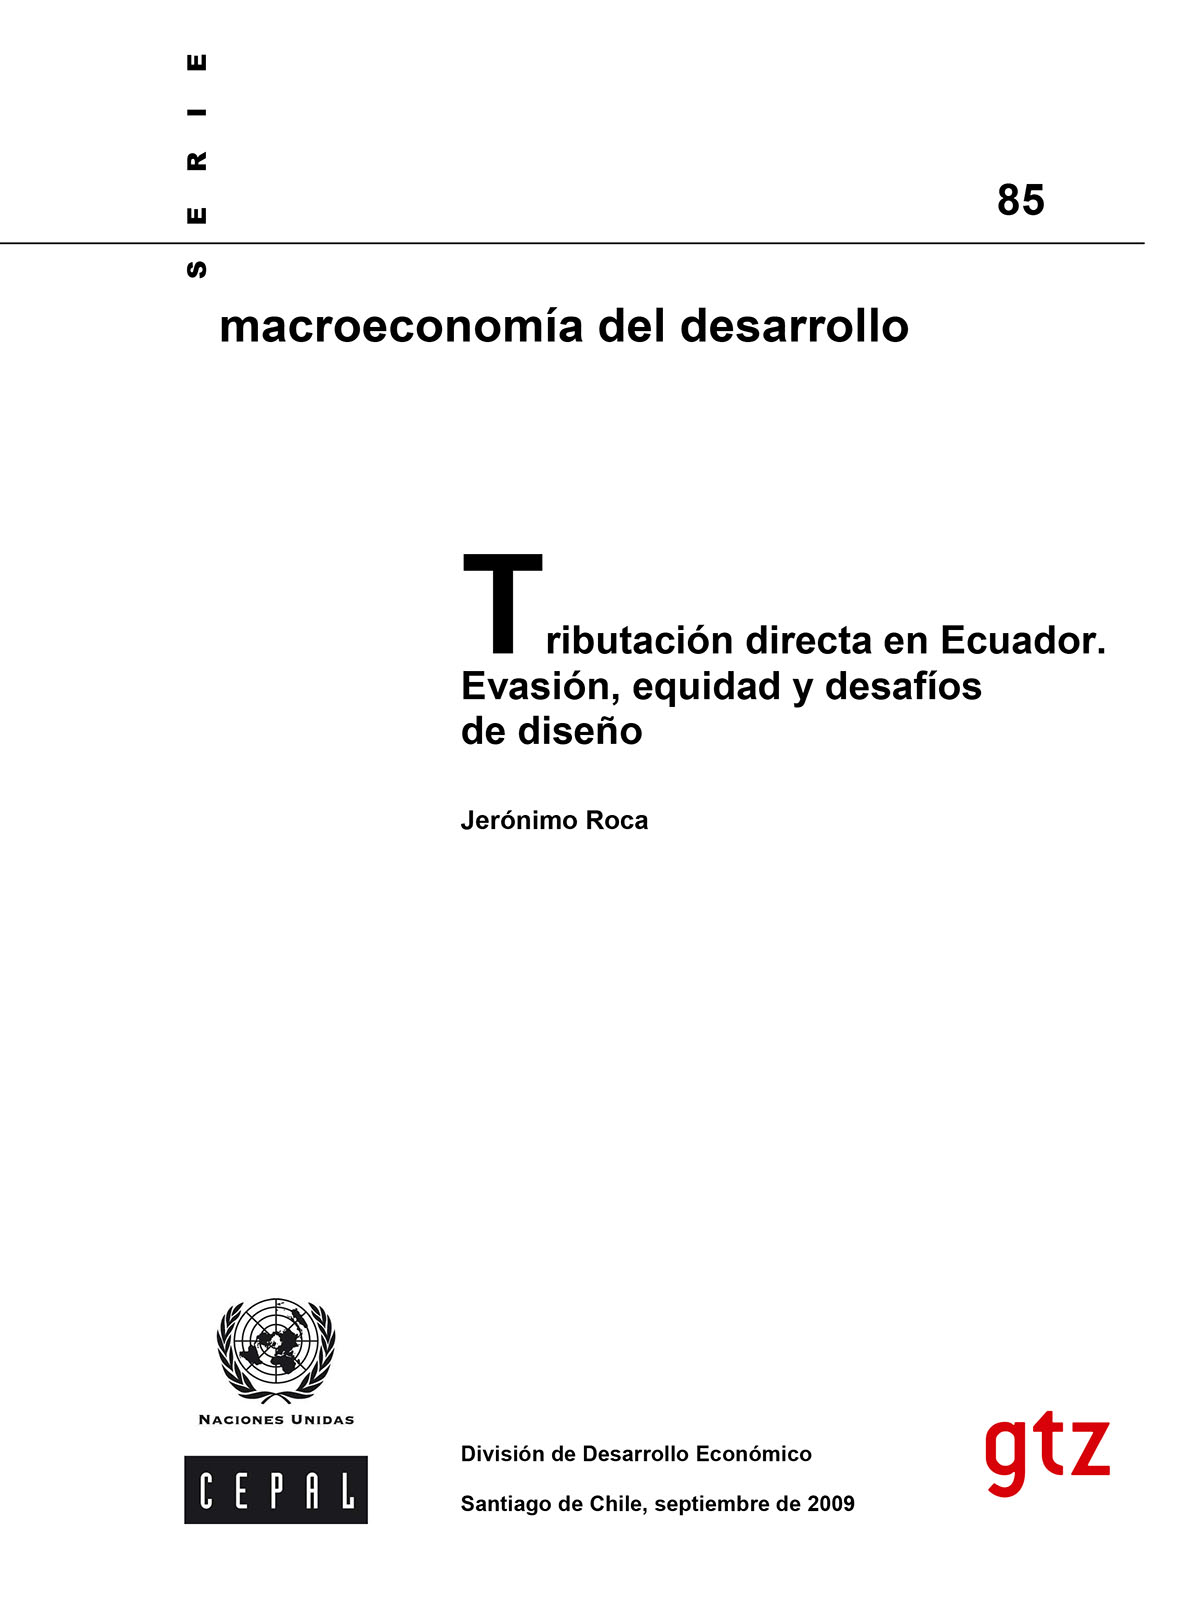 Roca, Jerónimo <br>Tributación directa en Ecuador. Evasión, equidad y desafíos de diseño<br/>Santiago de Chile: CEPAL : GTZ. 2009. 83 páginas 